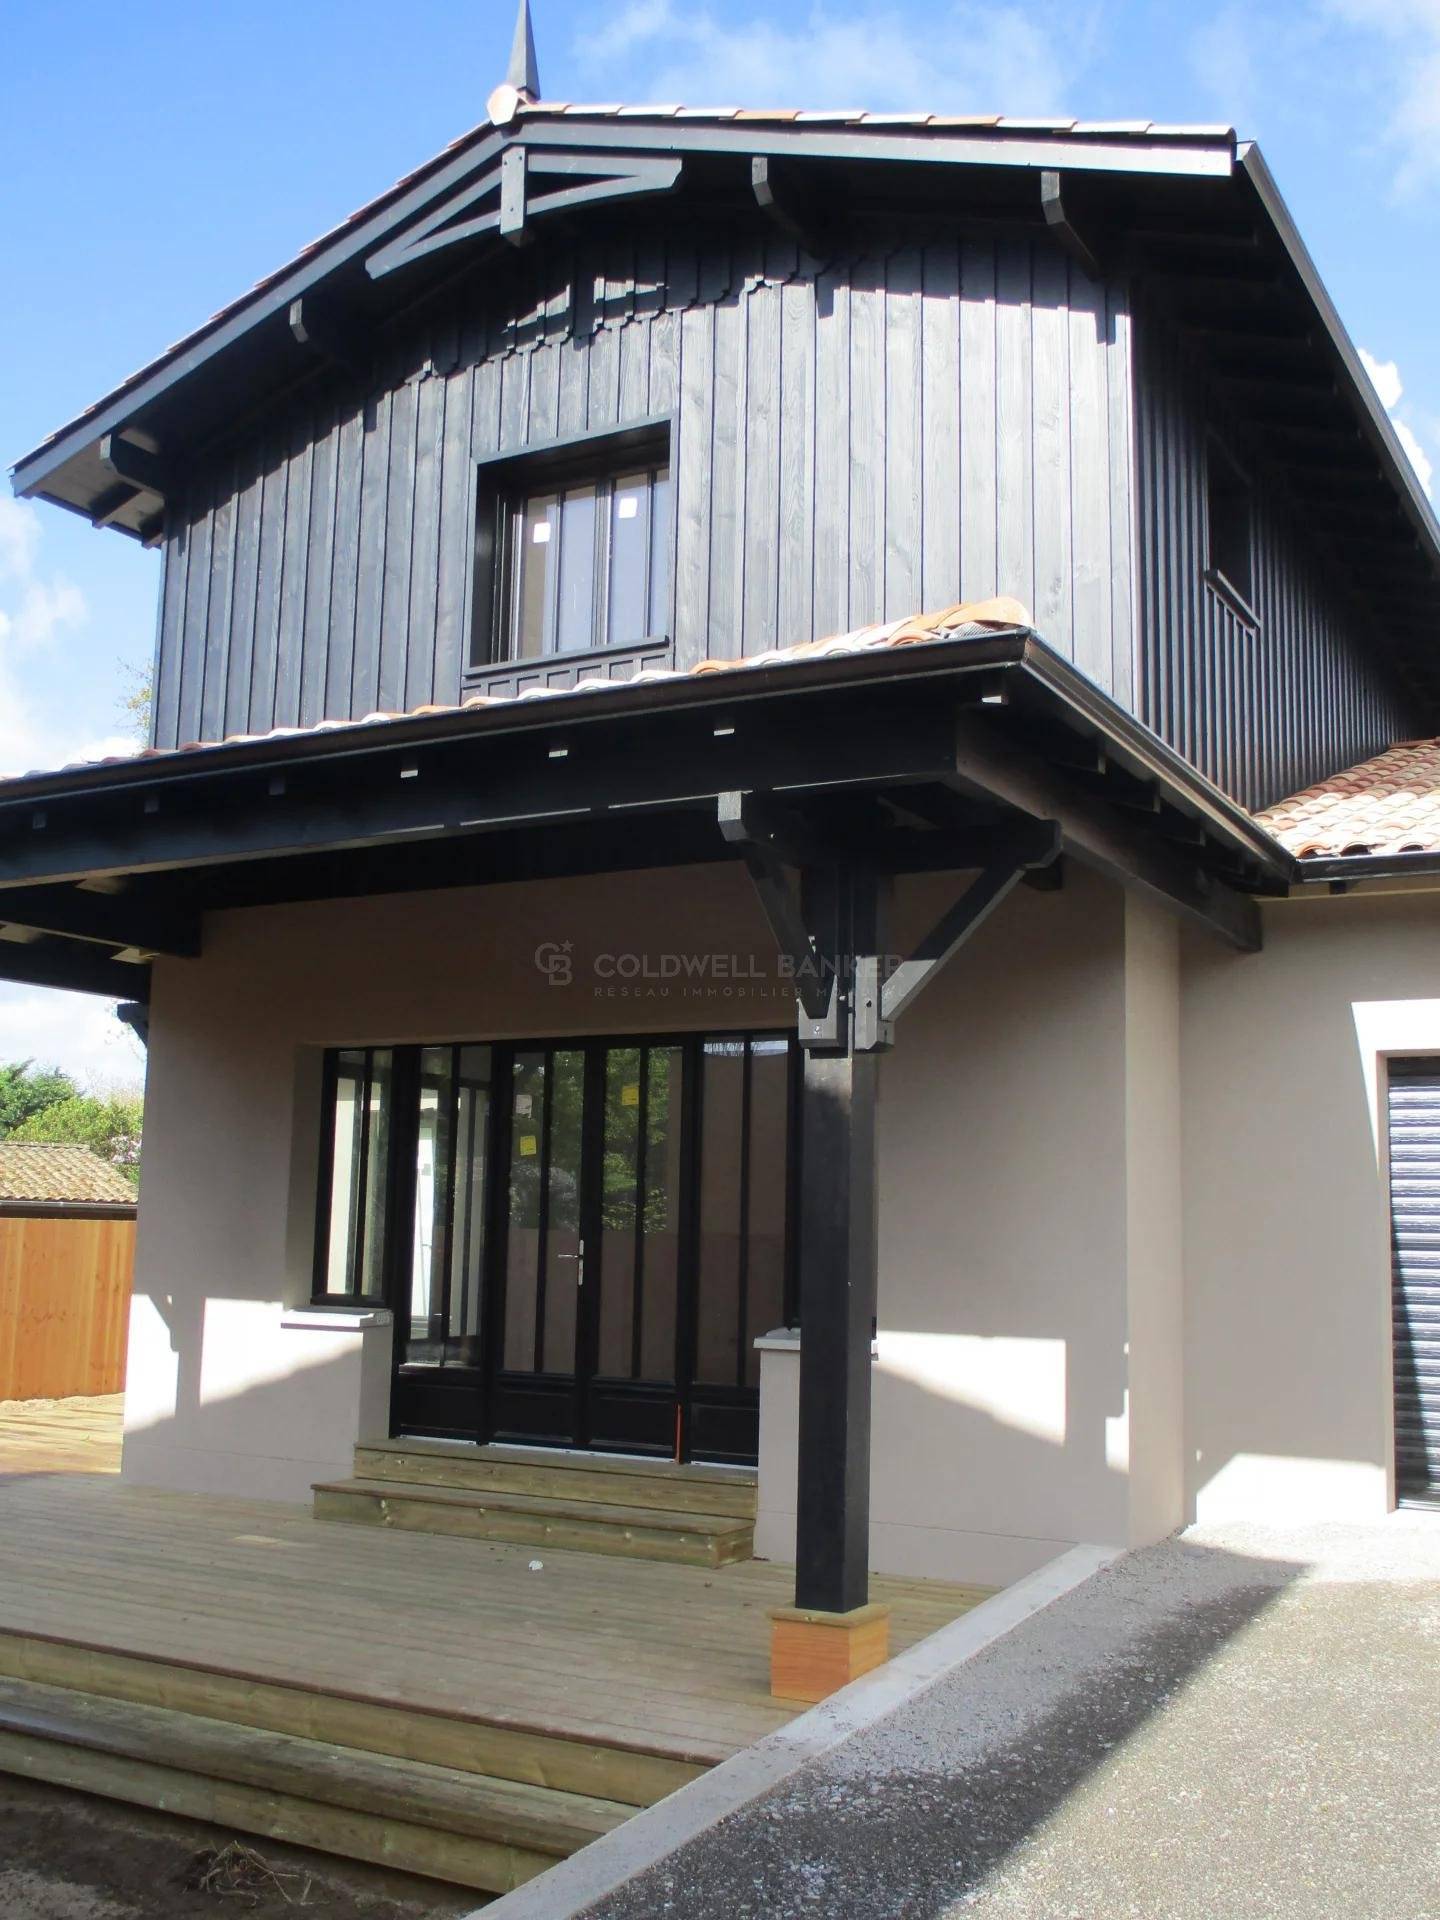 Villa neuve proche de la plage avec terrasse en bois à vendre ANDERNOS-LES-BAINS